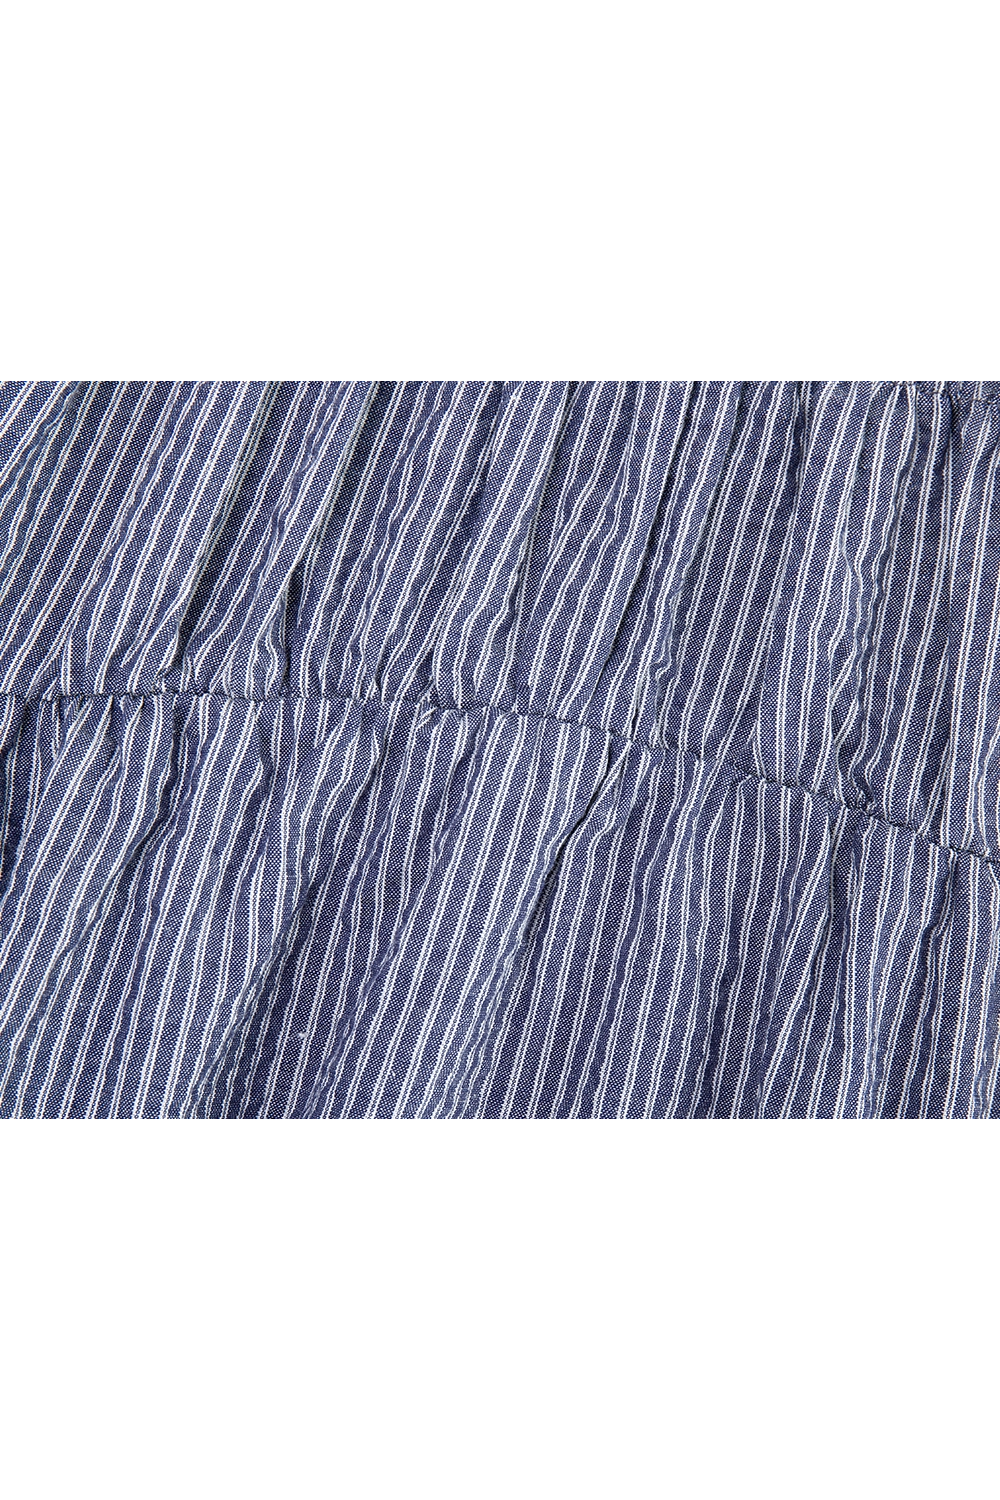 Robe midi plissée à rayures et bretelles spaghetti pour femmes de coloris bleu